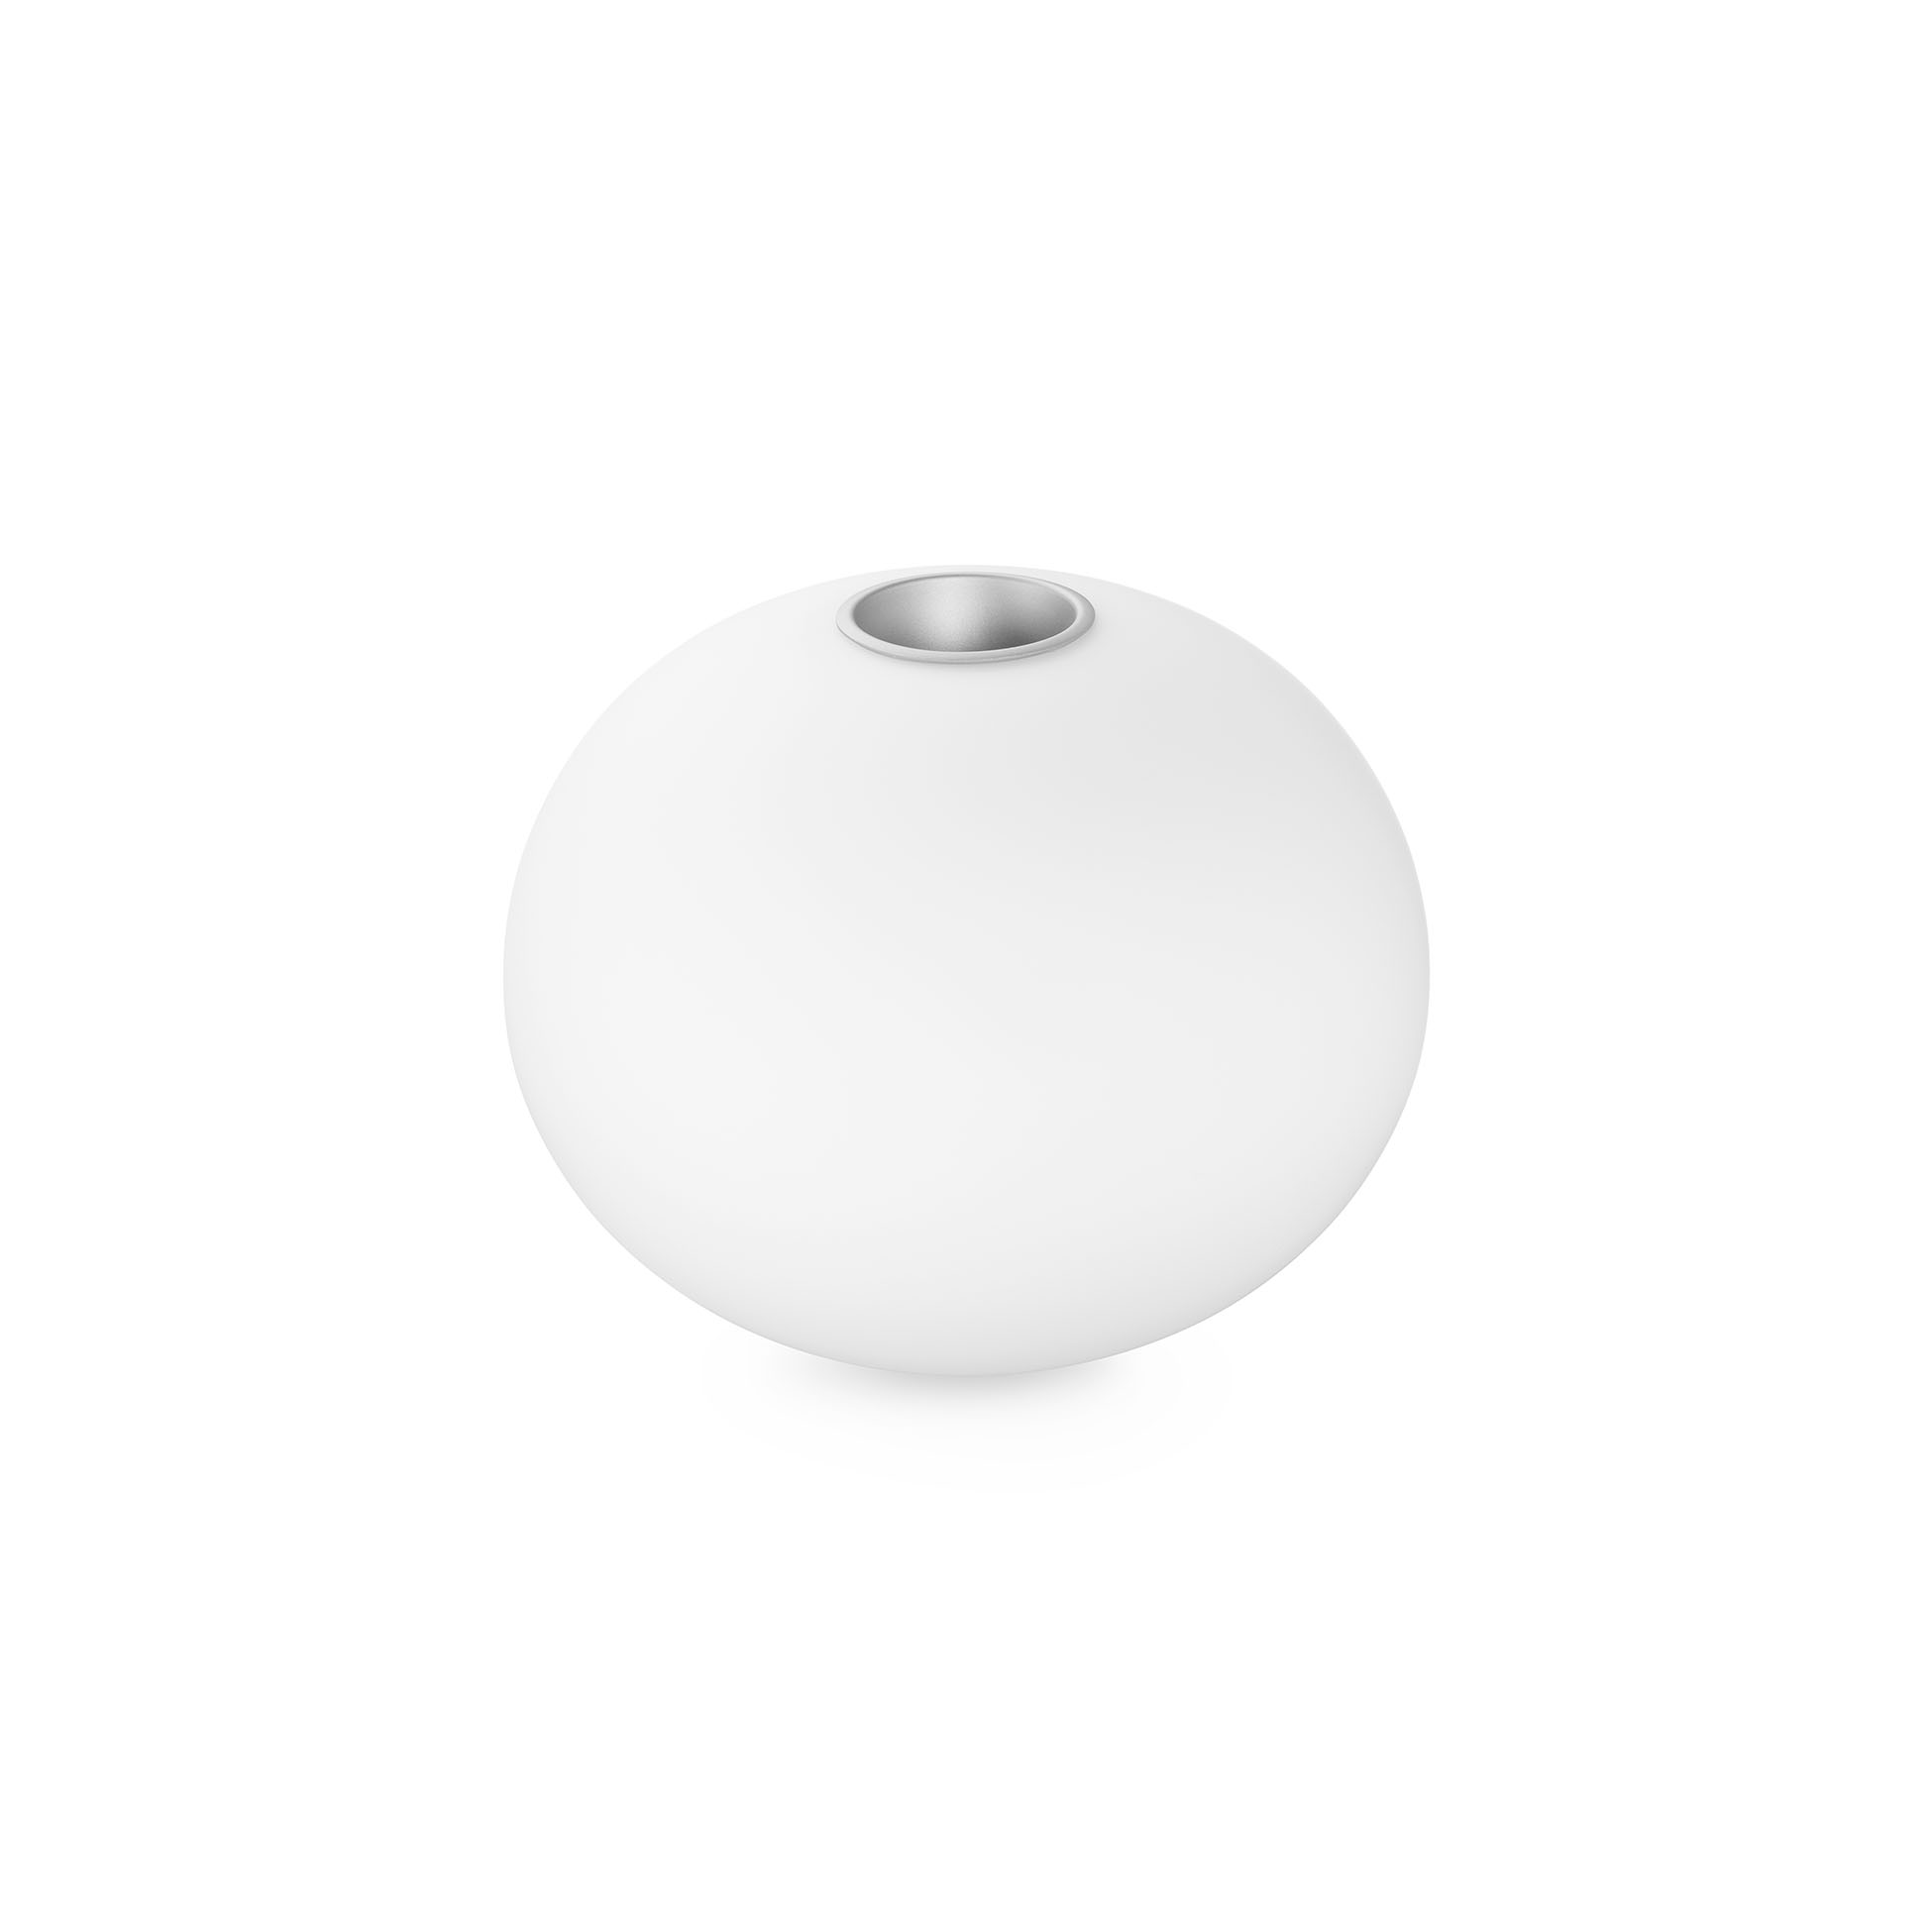 Glo-Ball 1 opal diffuser. Grey Base F3050061 | Flos